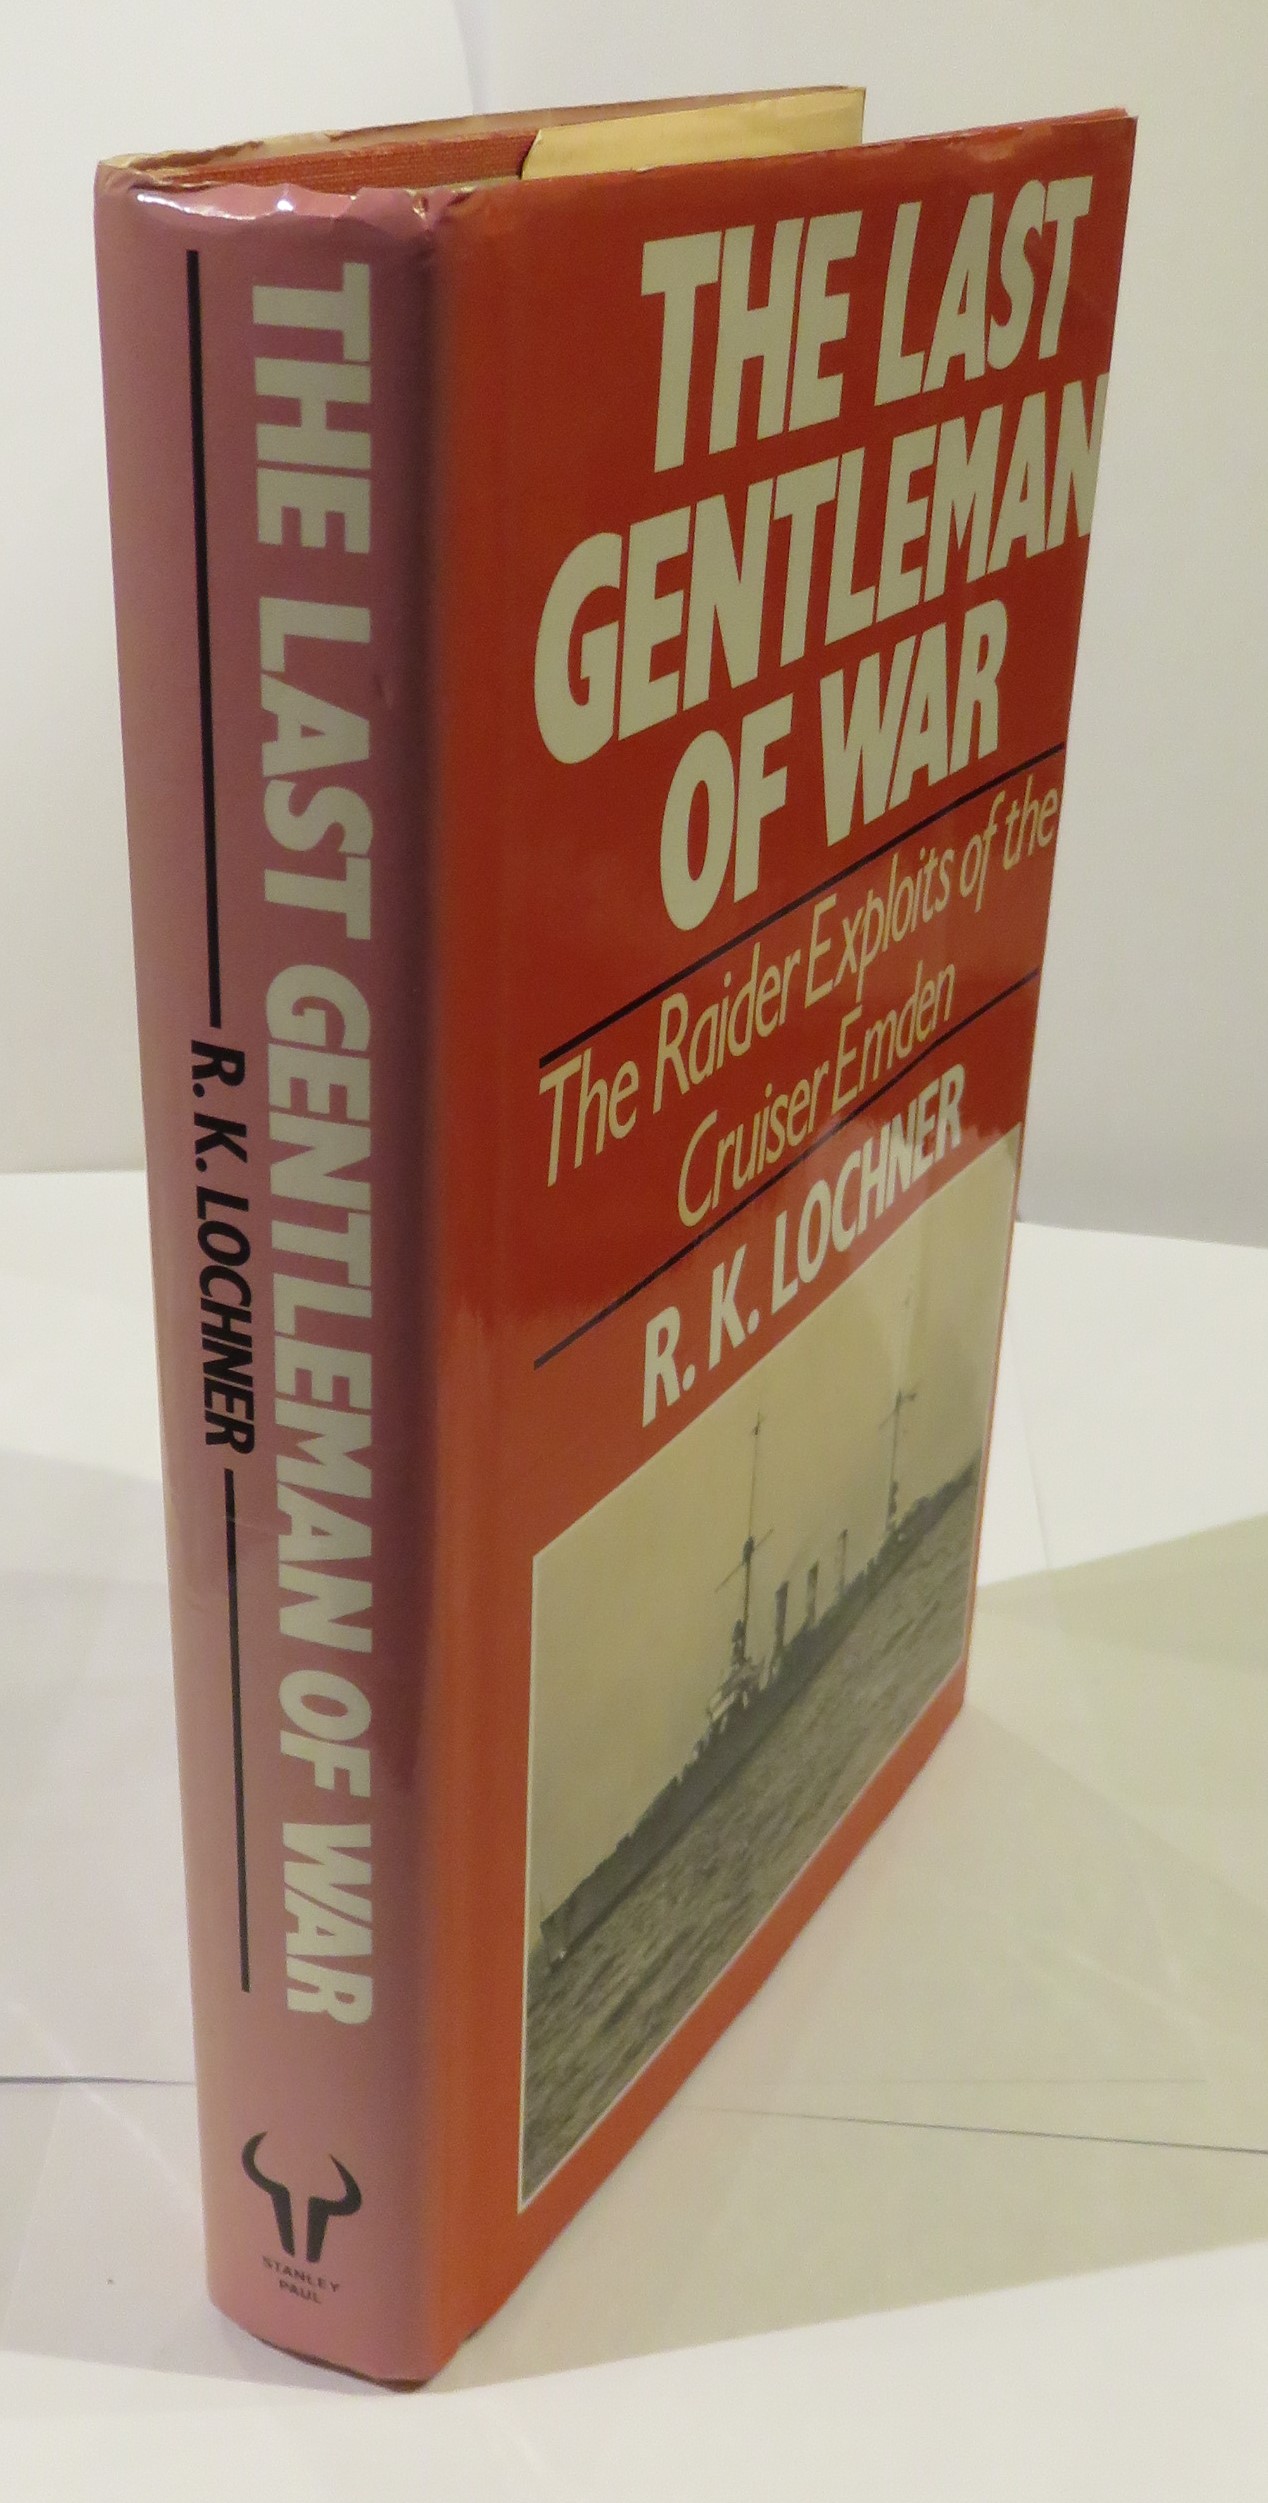 The Last Gentleman of War: The Raider Exploits of the Cruiser Emden - R. K. Lochner